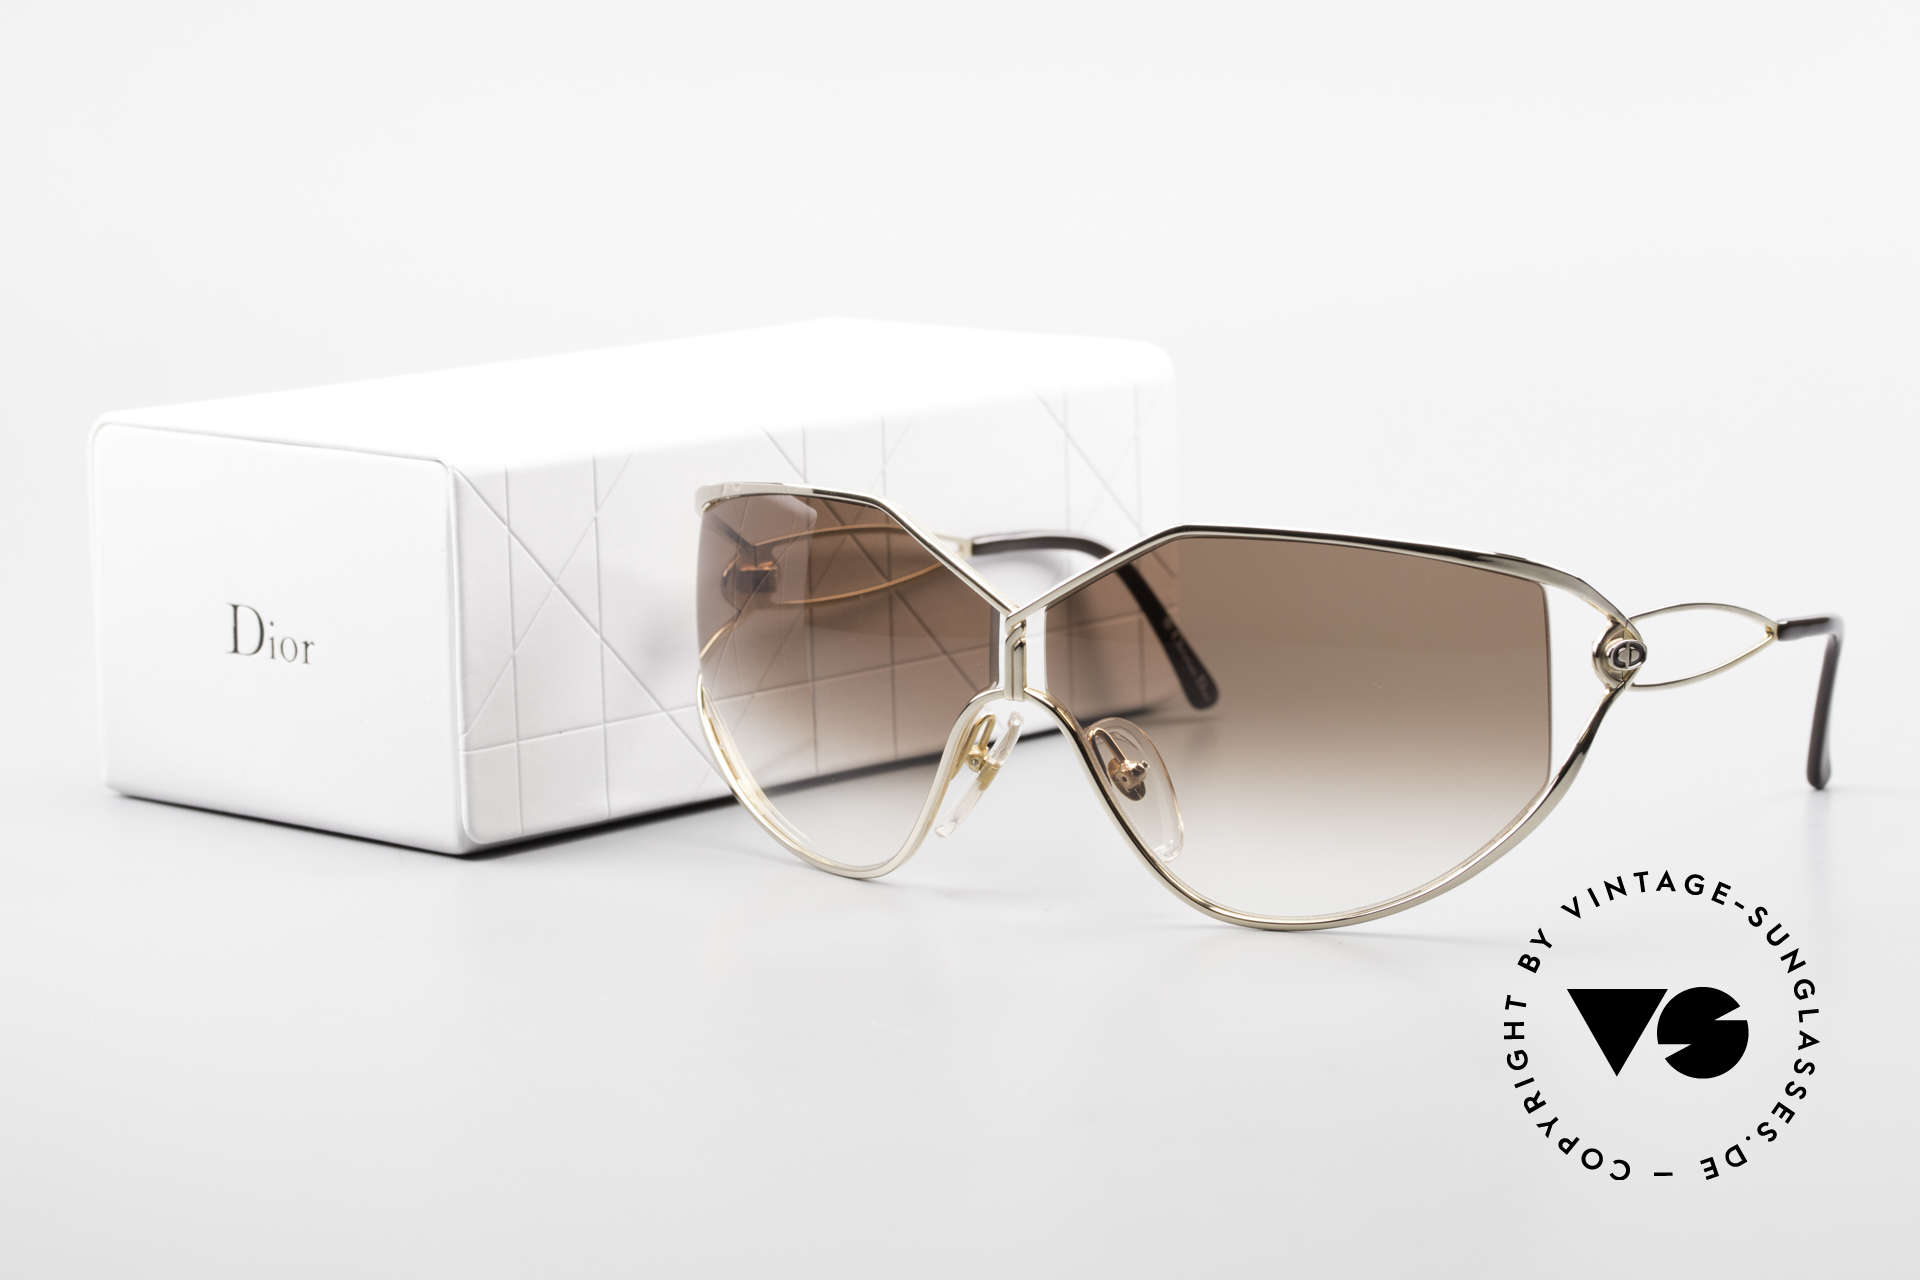 Christian Dior 2345 Ladies 90s Designer Sunglasses, Size: medium, Made for Women